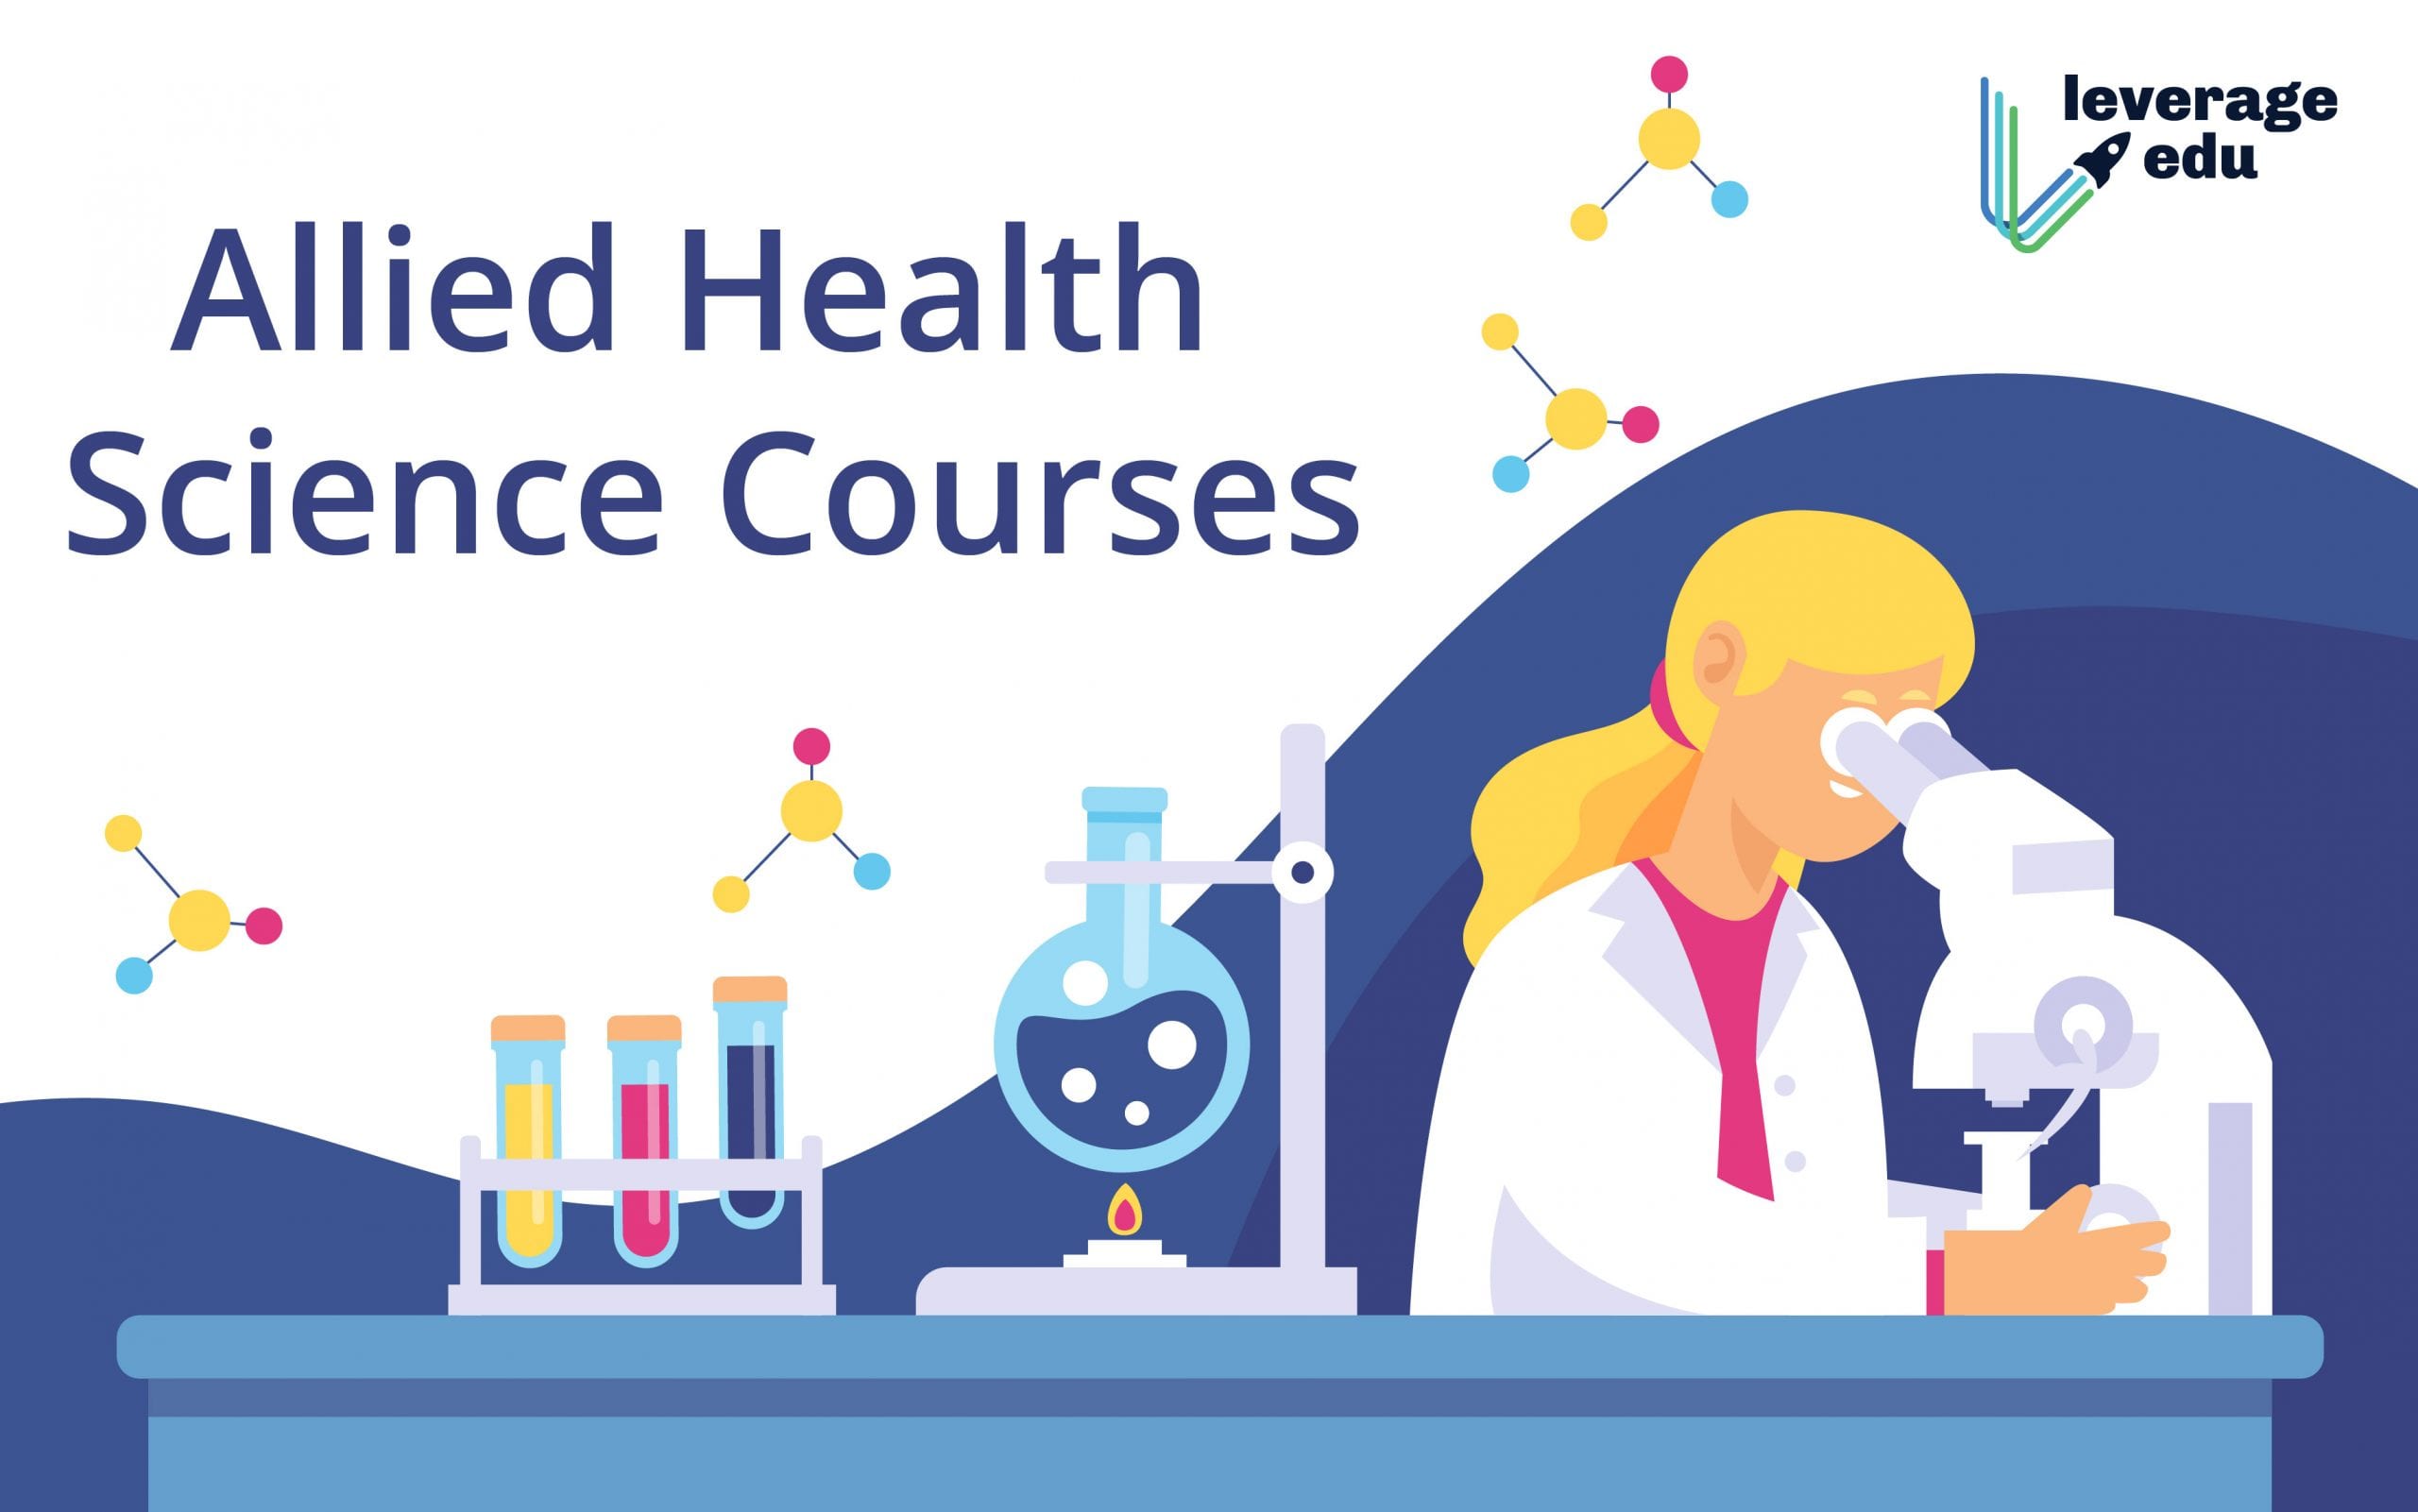 Health Science I